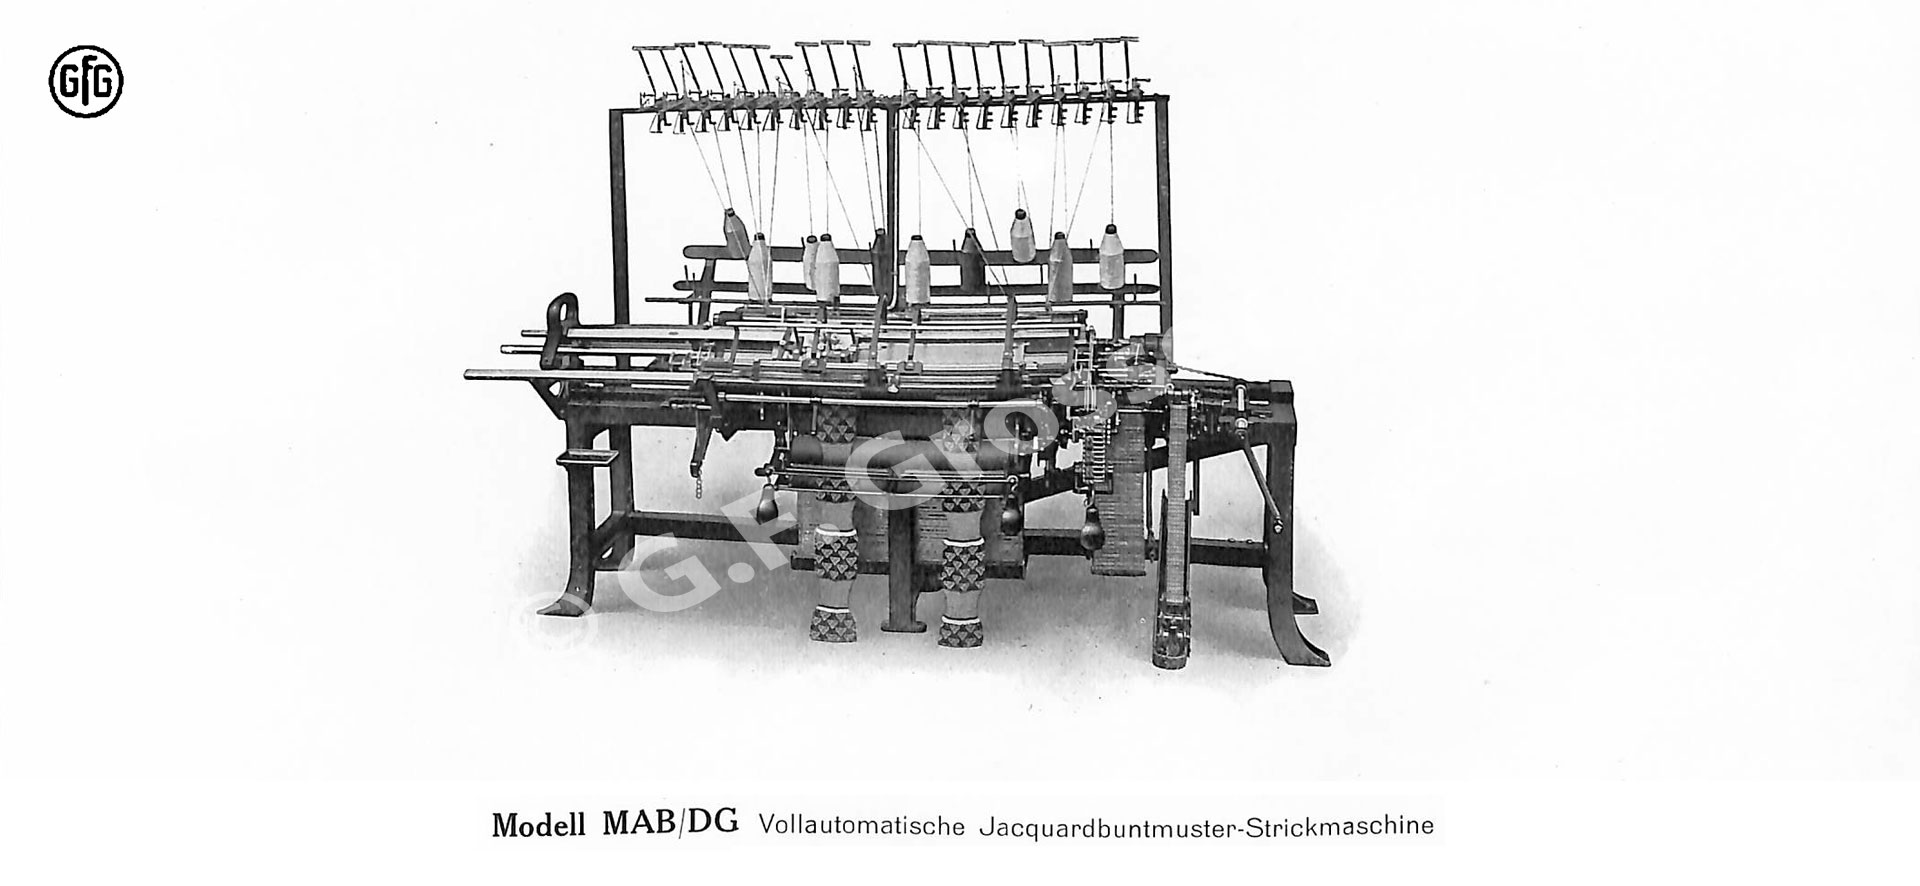 Strickmaschine aus einem Katalog der Strick und Spulmaschinenfabrik G.F. Grosser